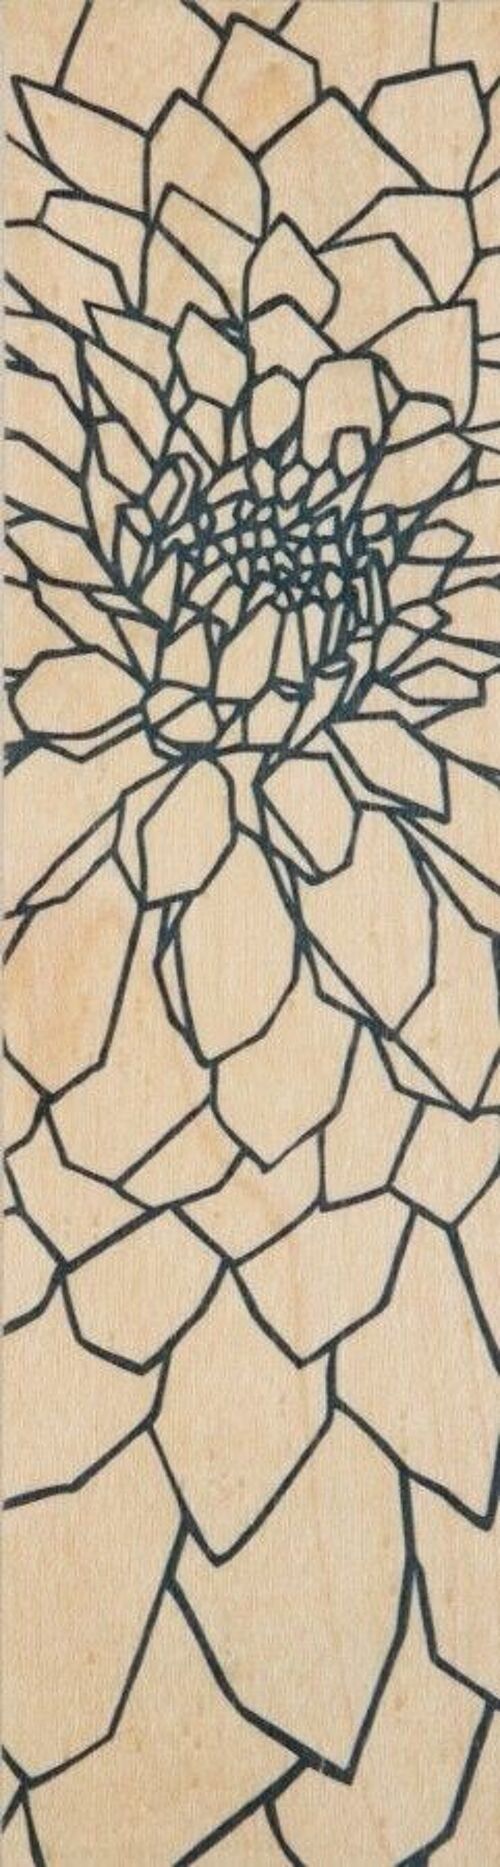 Marque-pages en bois - flowers dahlia